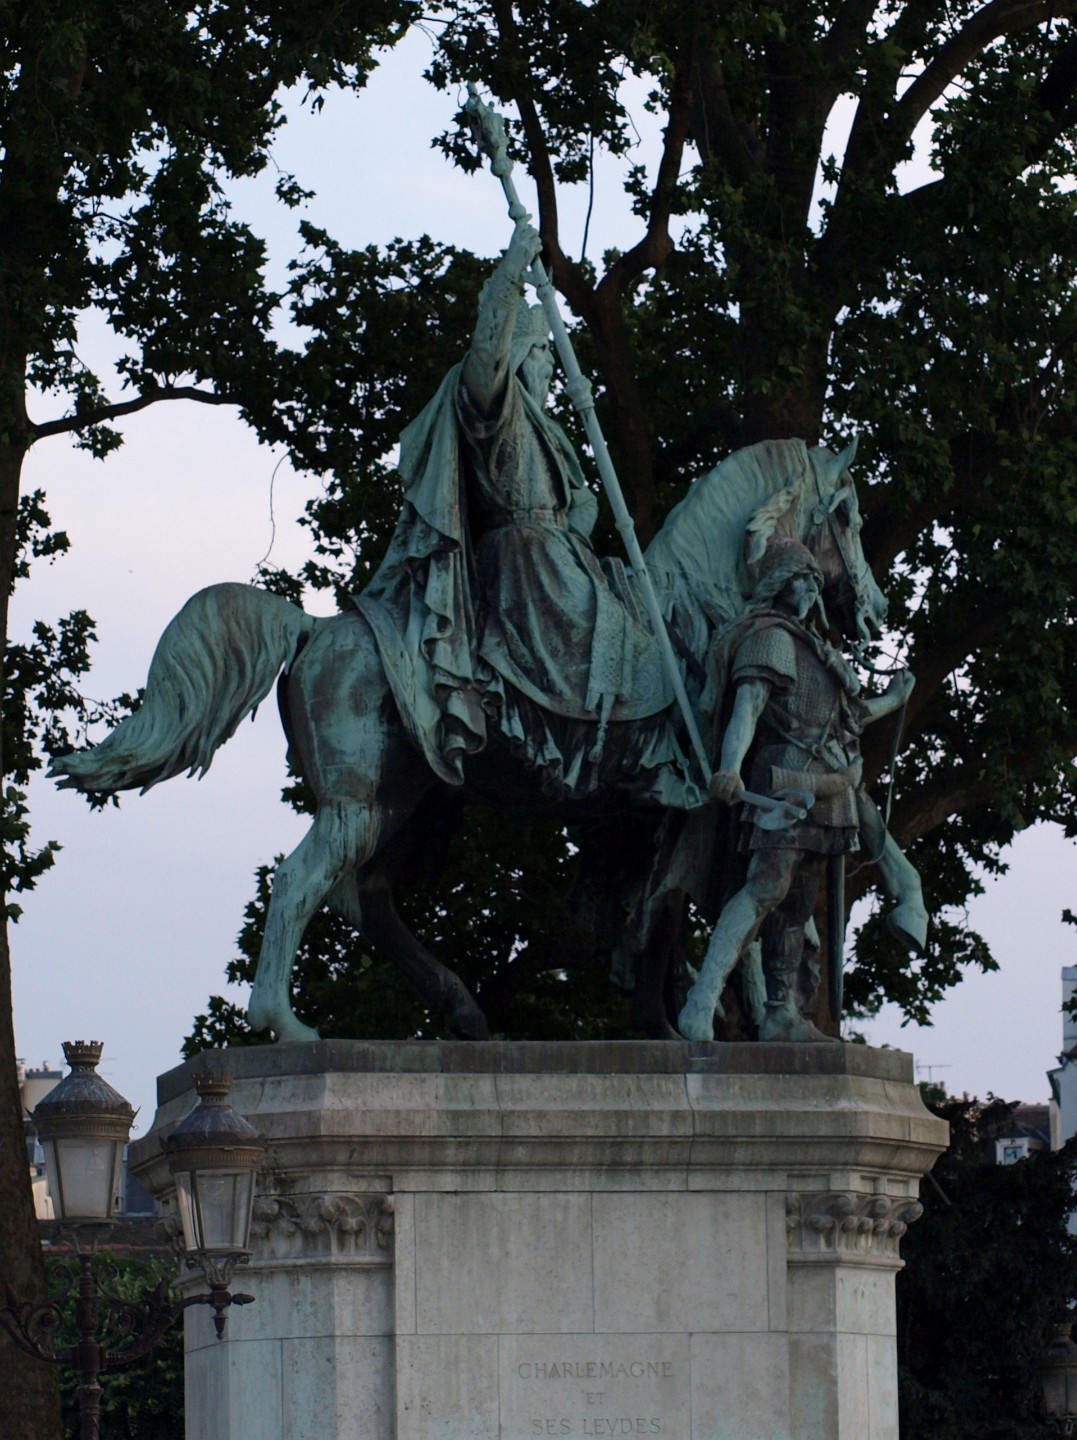 Statue of Charlemagne on Horseback